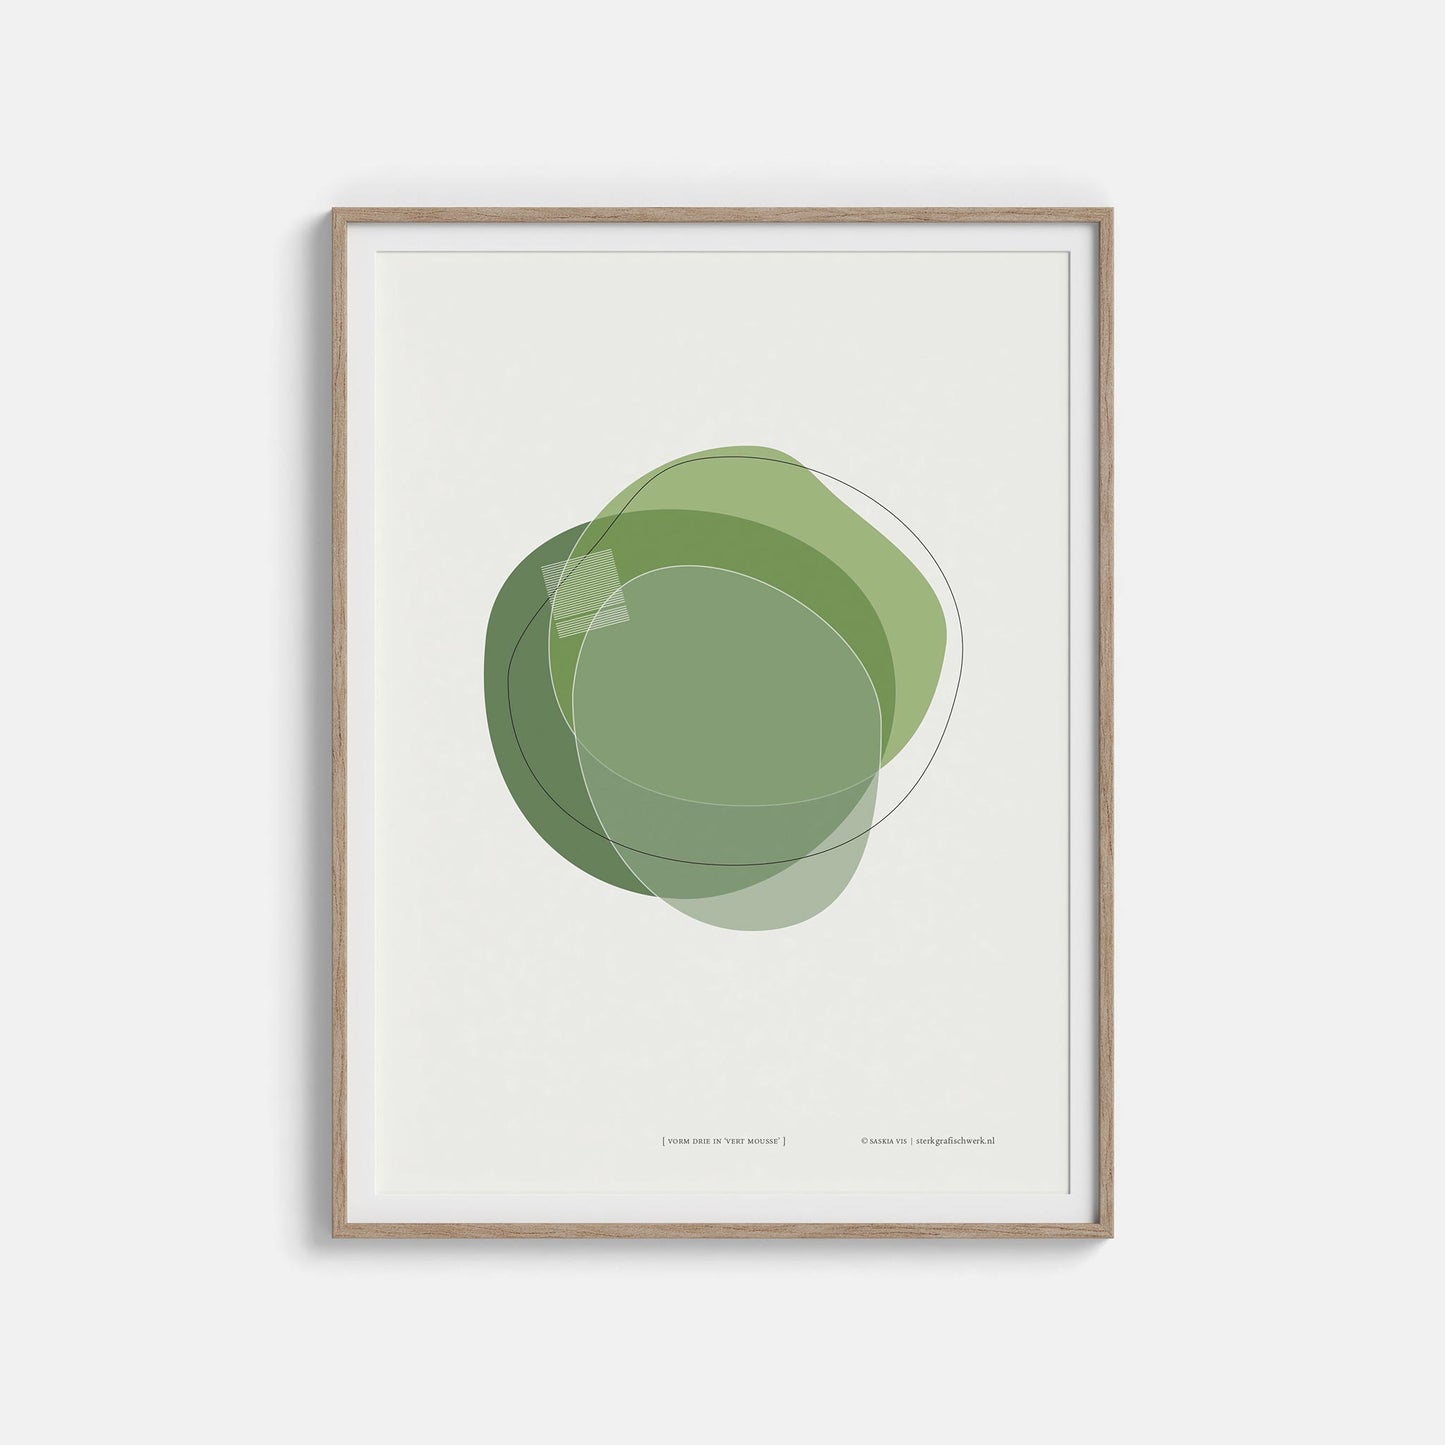 Productafbeelding poster "vorm drie in vert mousse" 2de impressie ingelijst hangend aan een witte wand